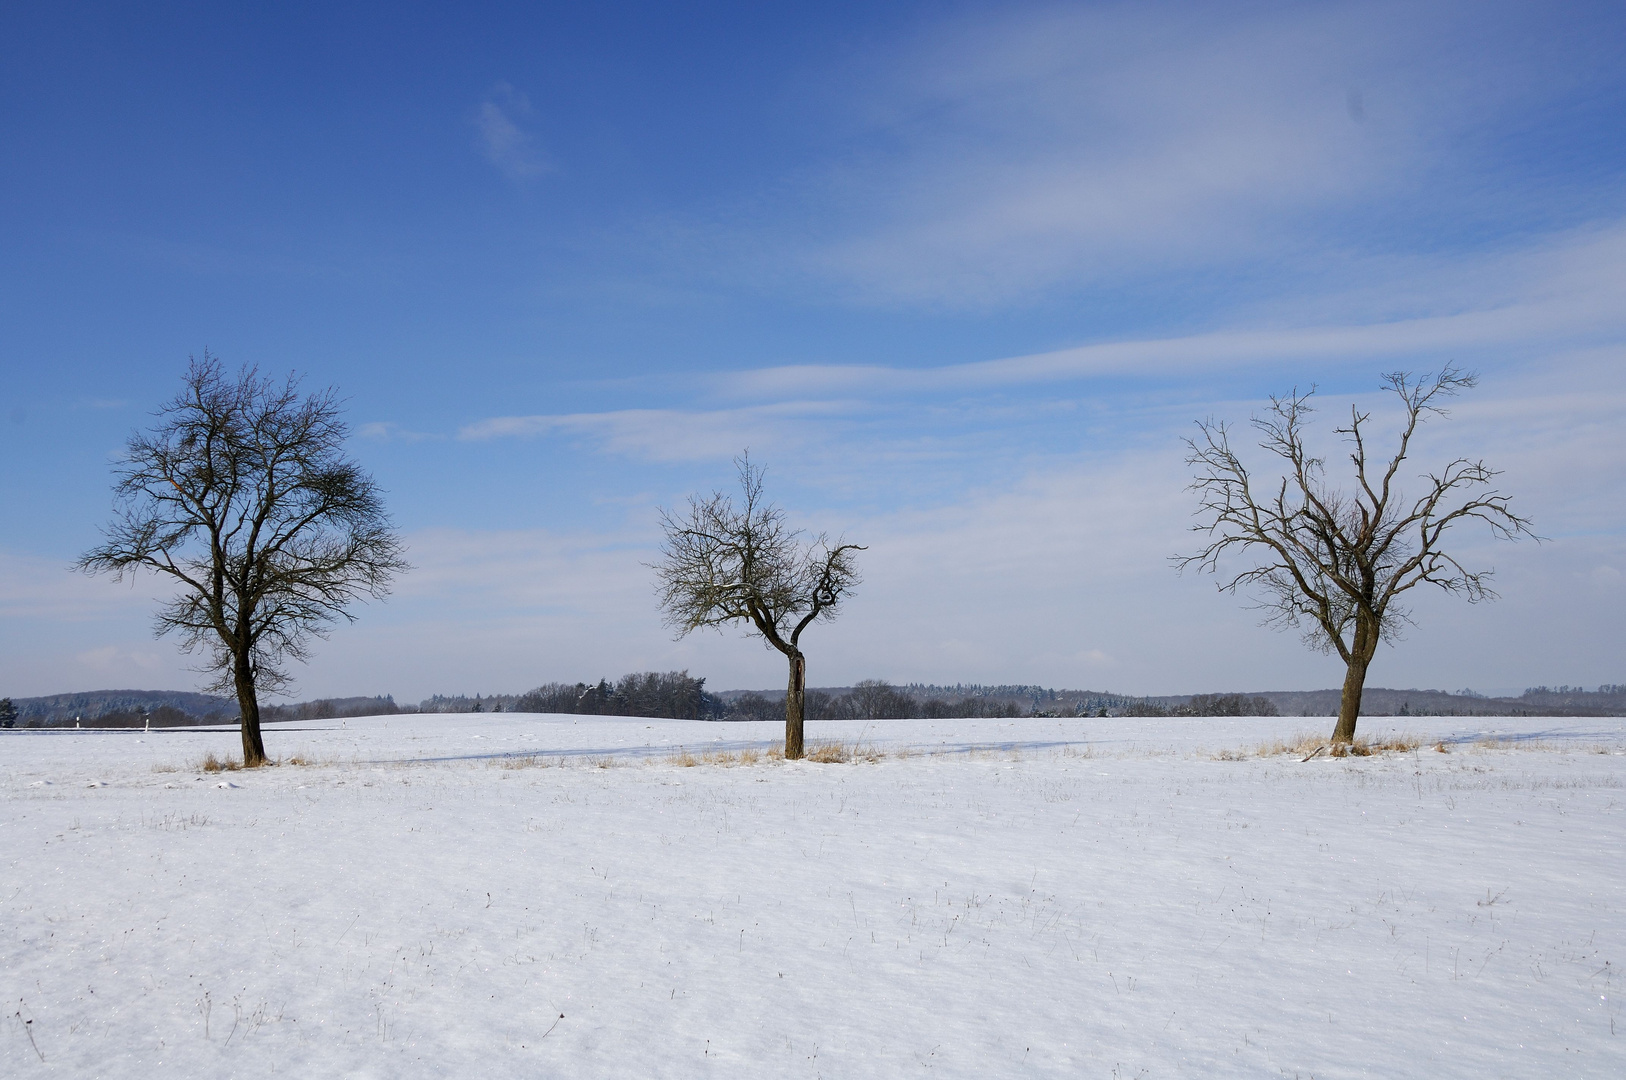 Baum-Trio im Winter